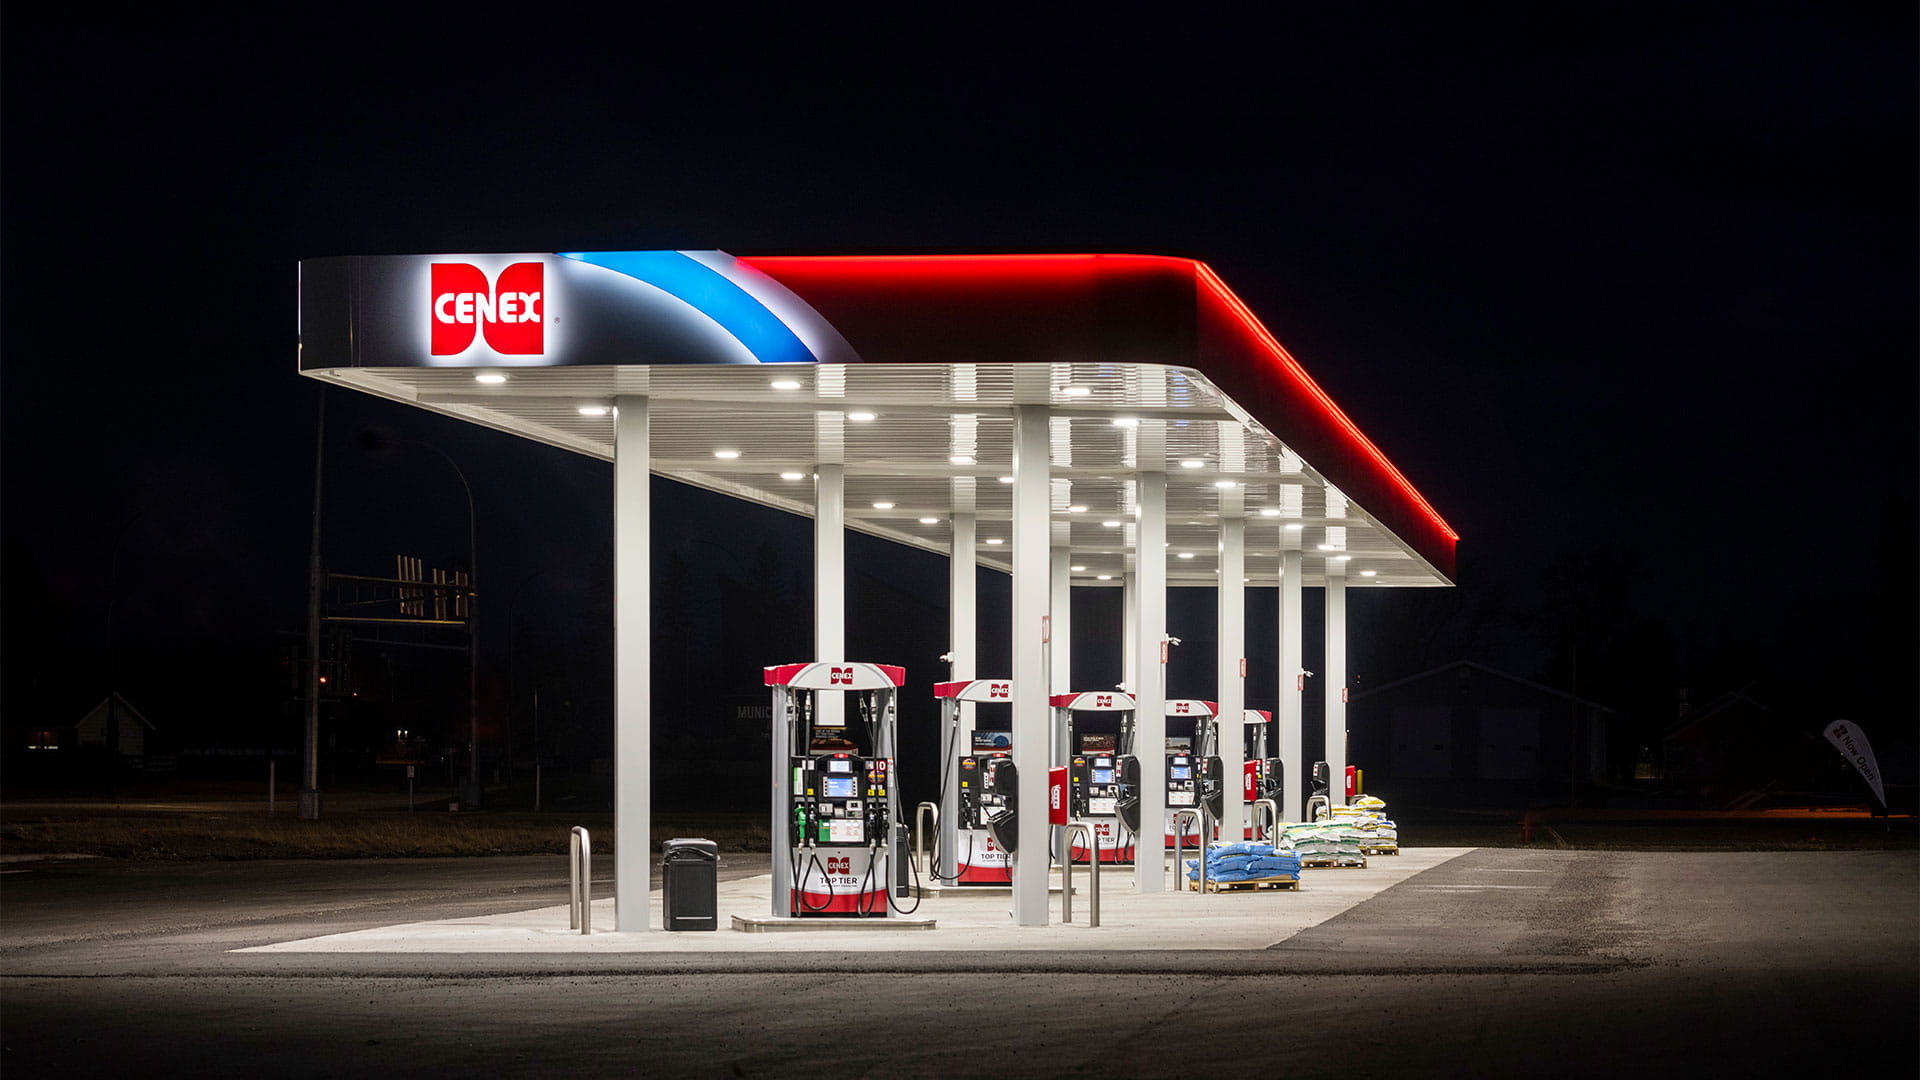 Halo image night gas station cenex lit